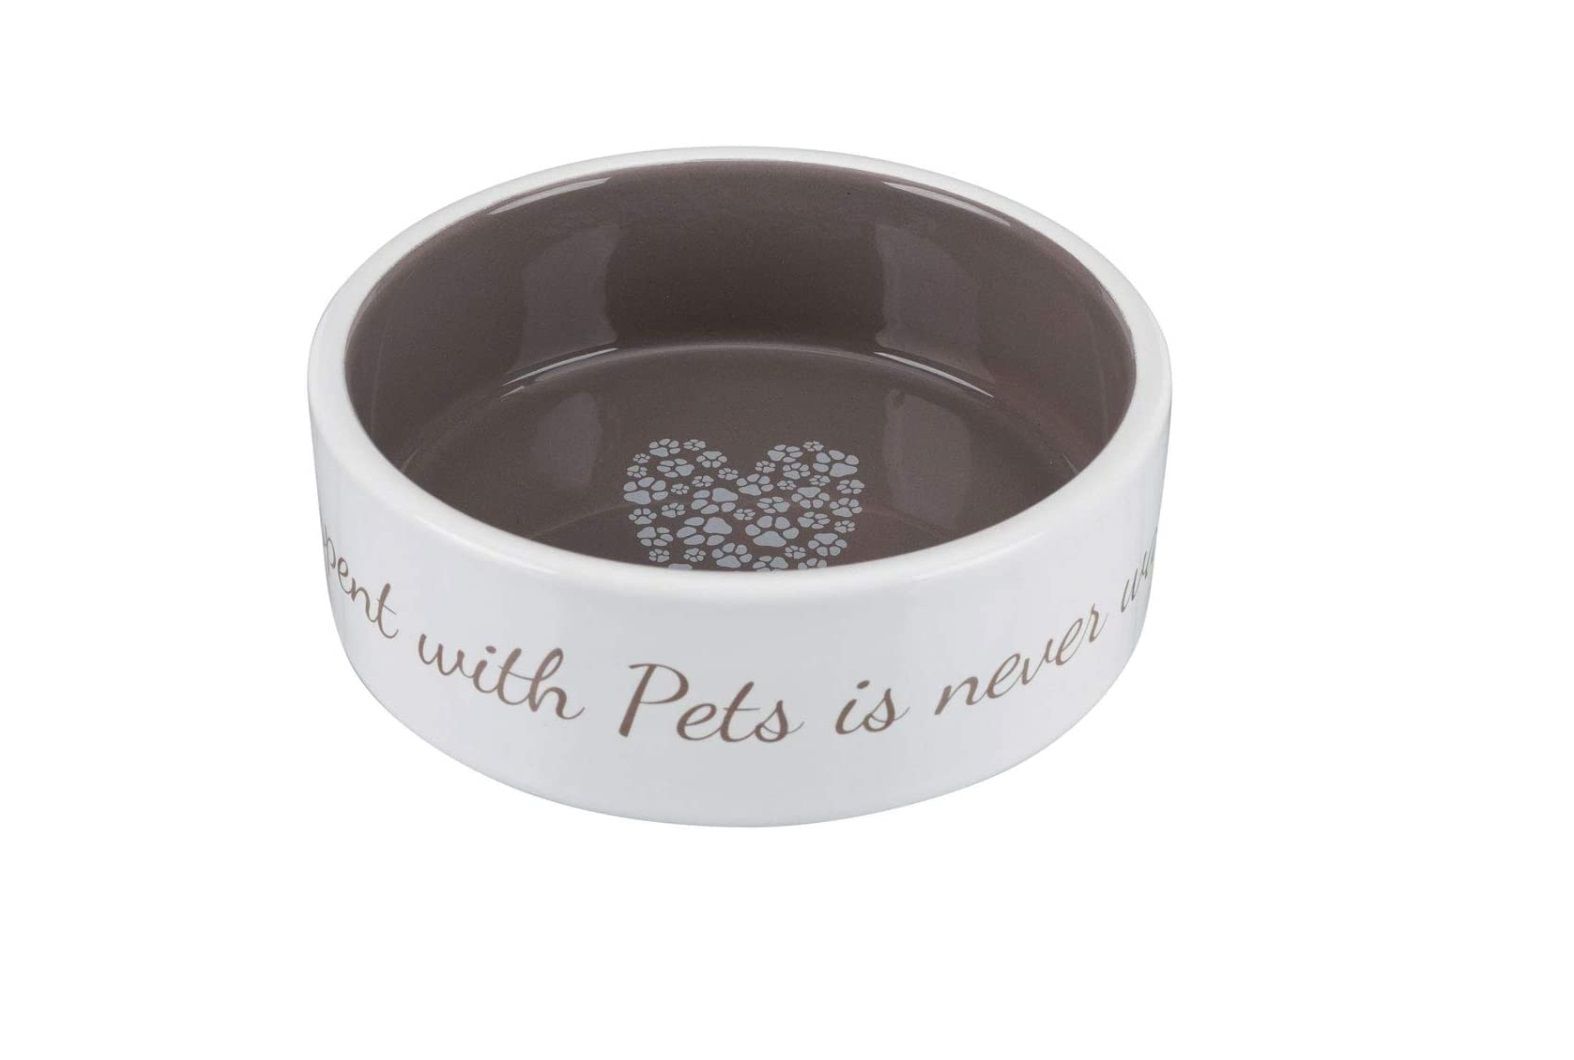 ¡Chollo! Cuenco de cerámica Pet's Home para mascotas por sólo 2,99€ (antes 8,71€)